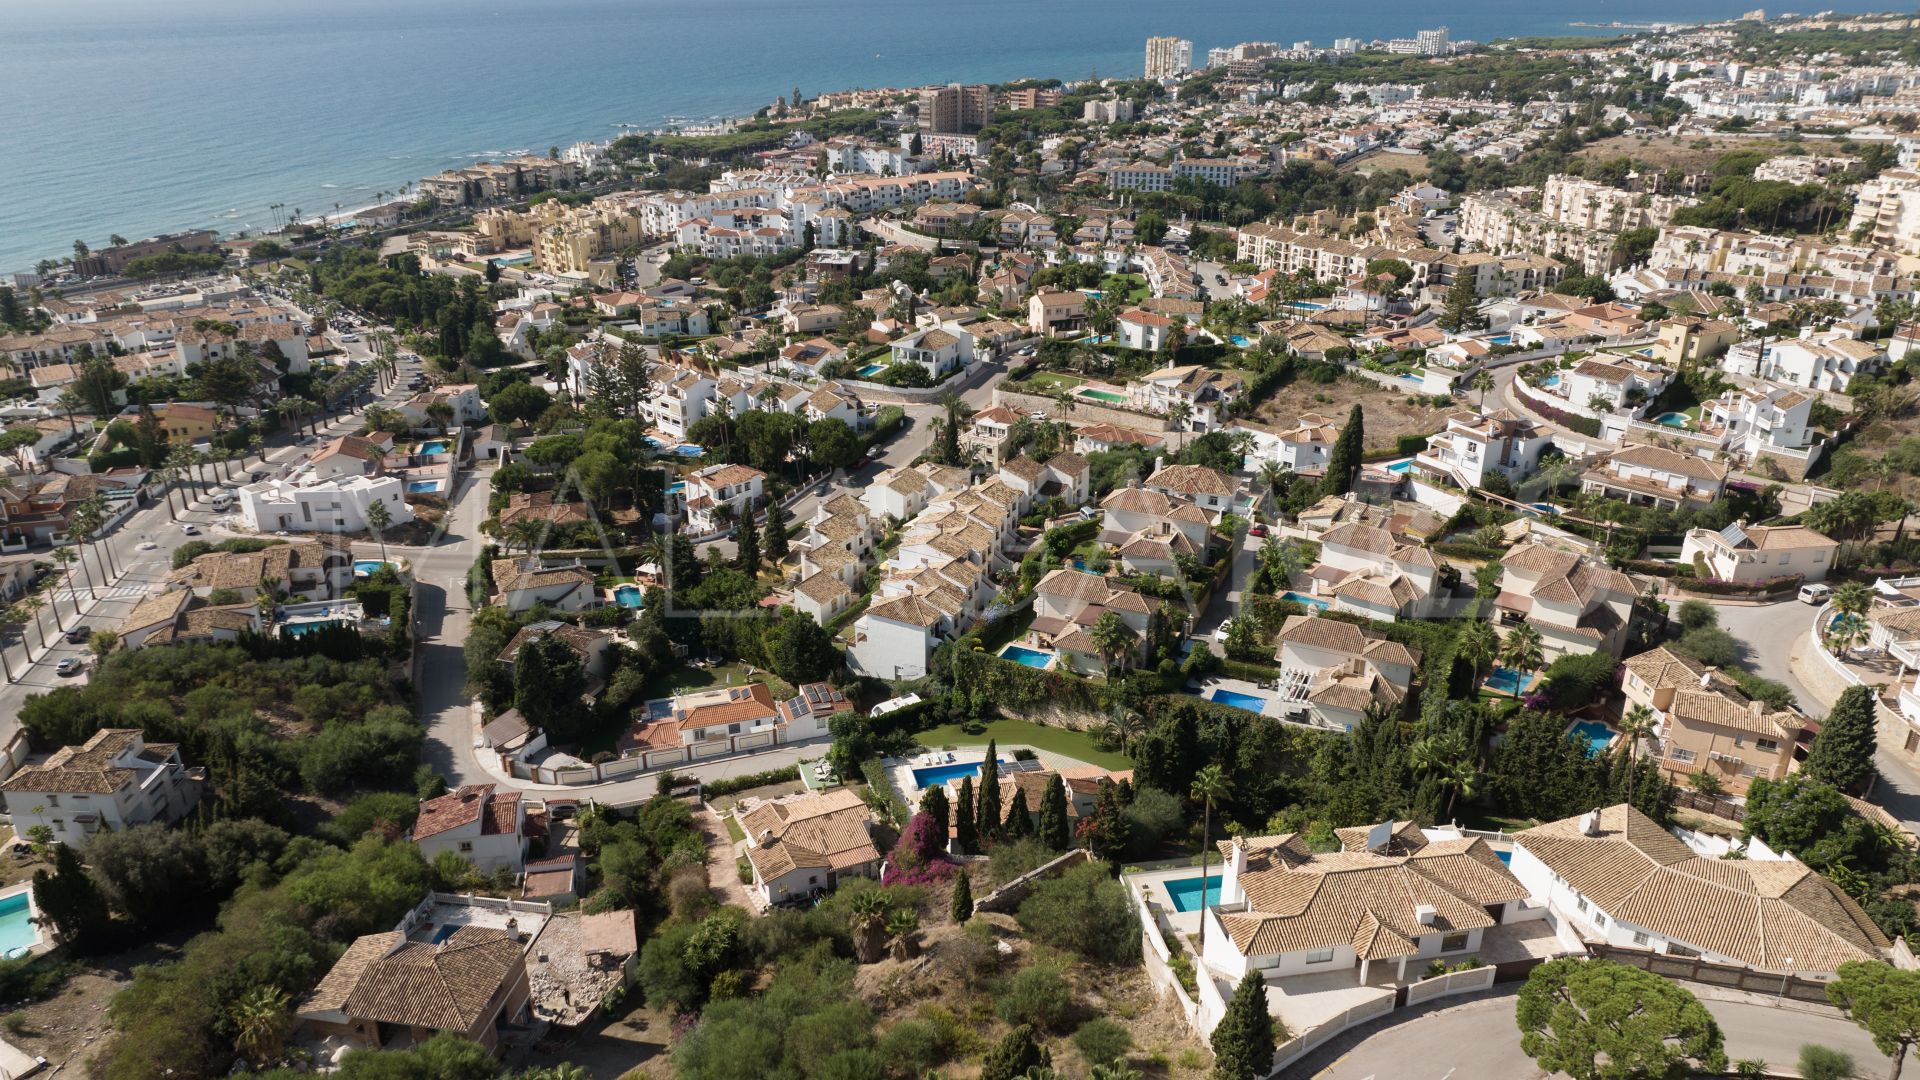 Terrain for sale in Riviera del Sol